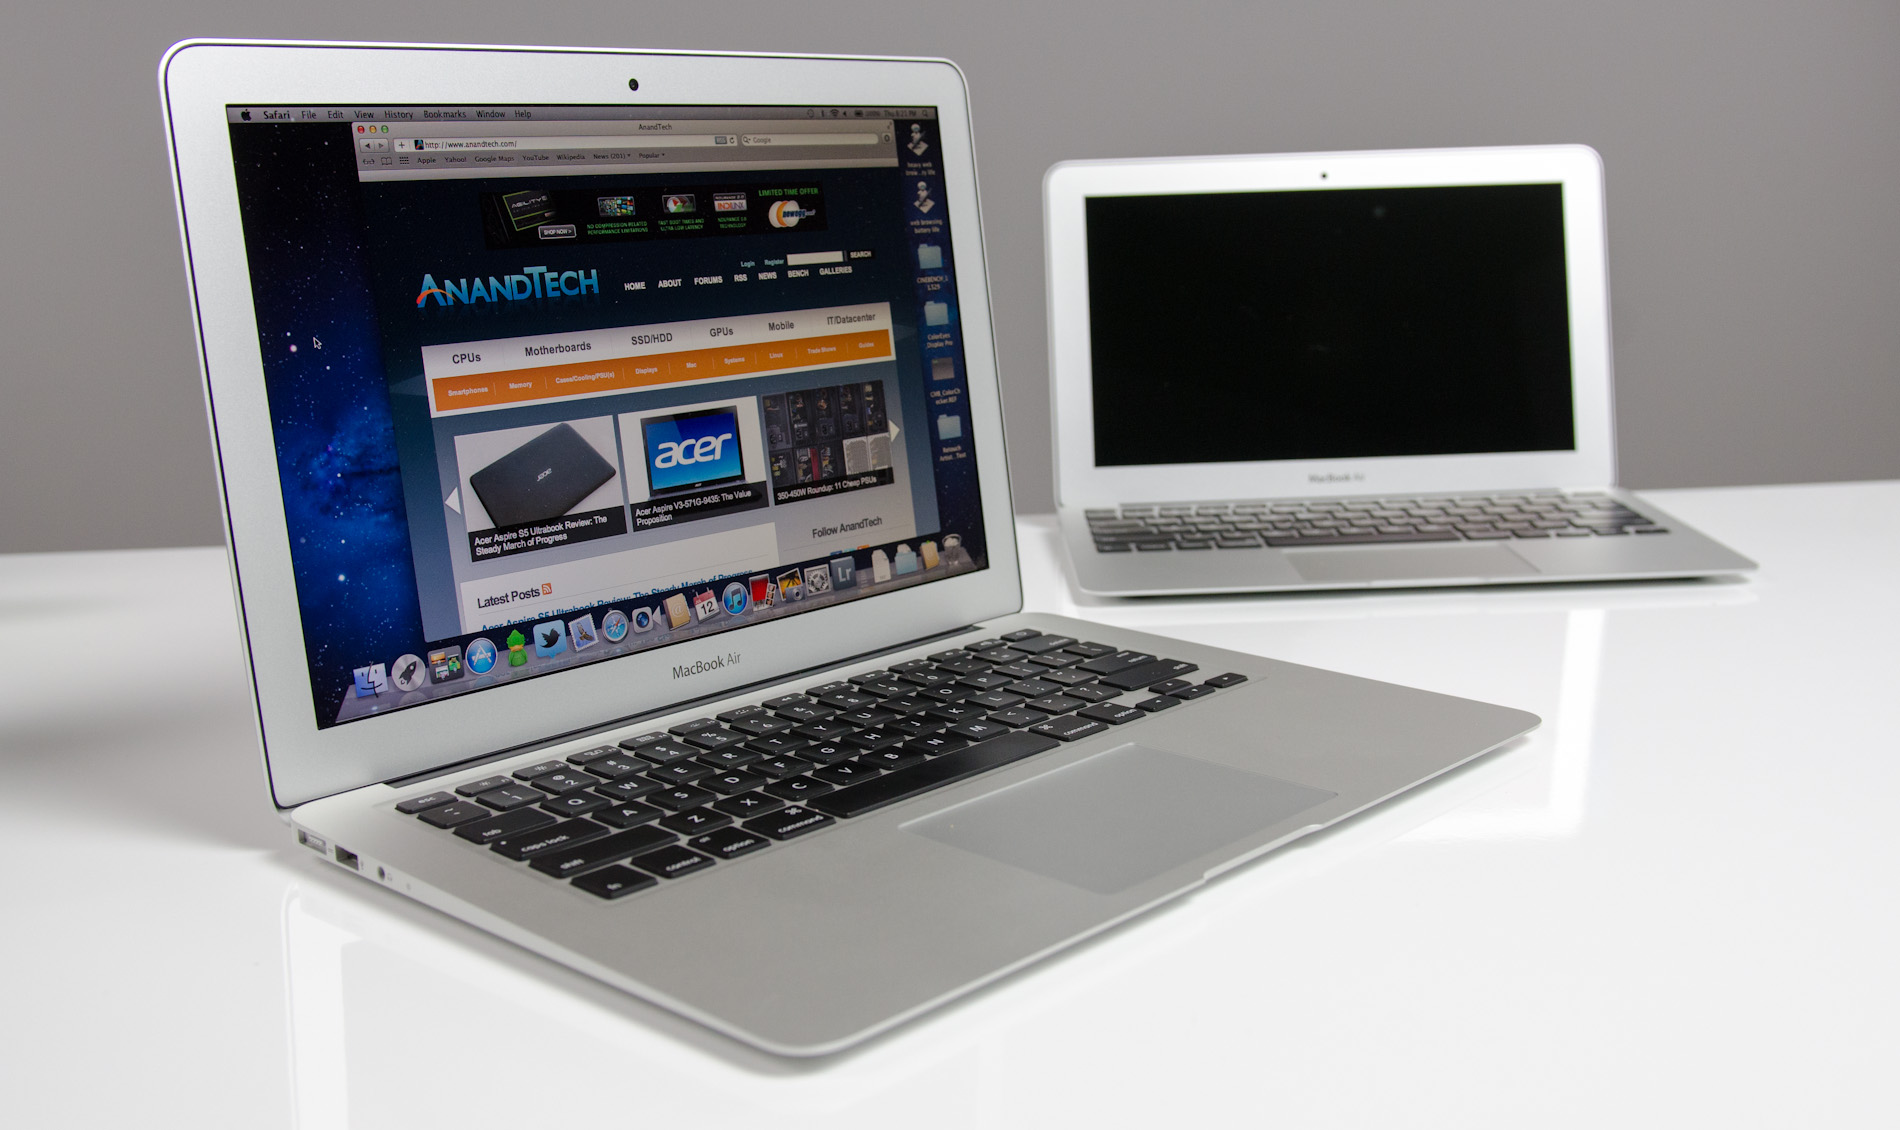 MacBook Air 2012